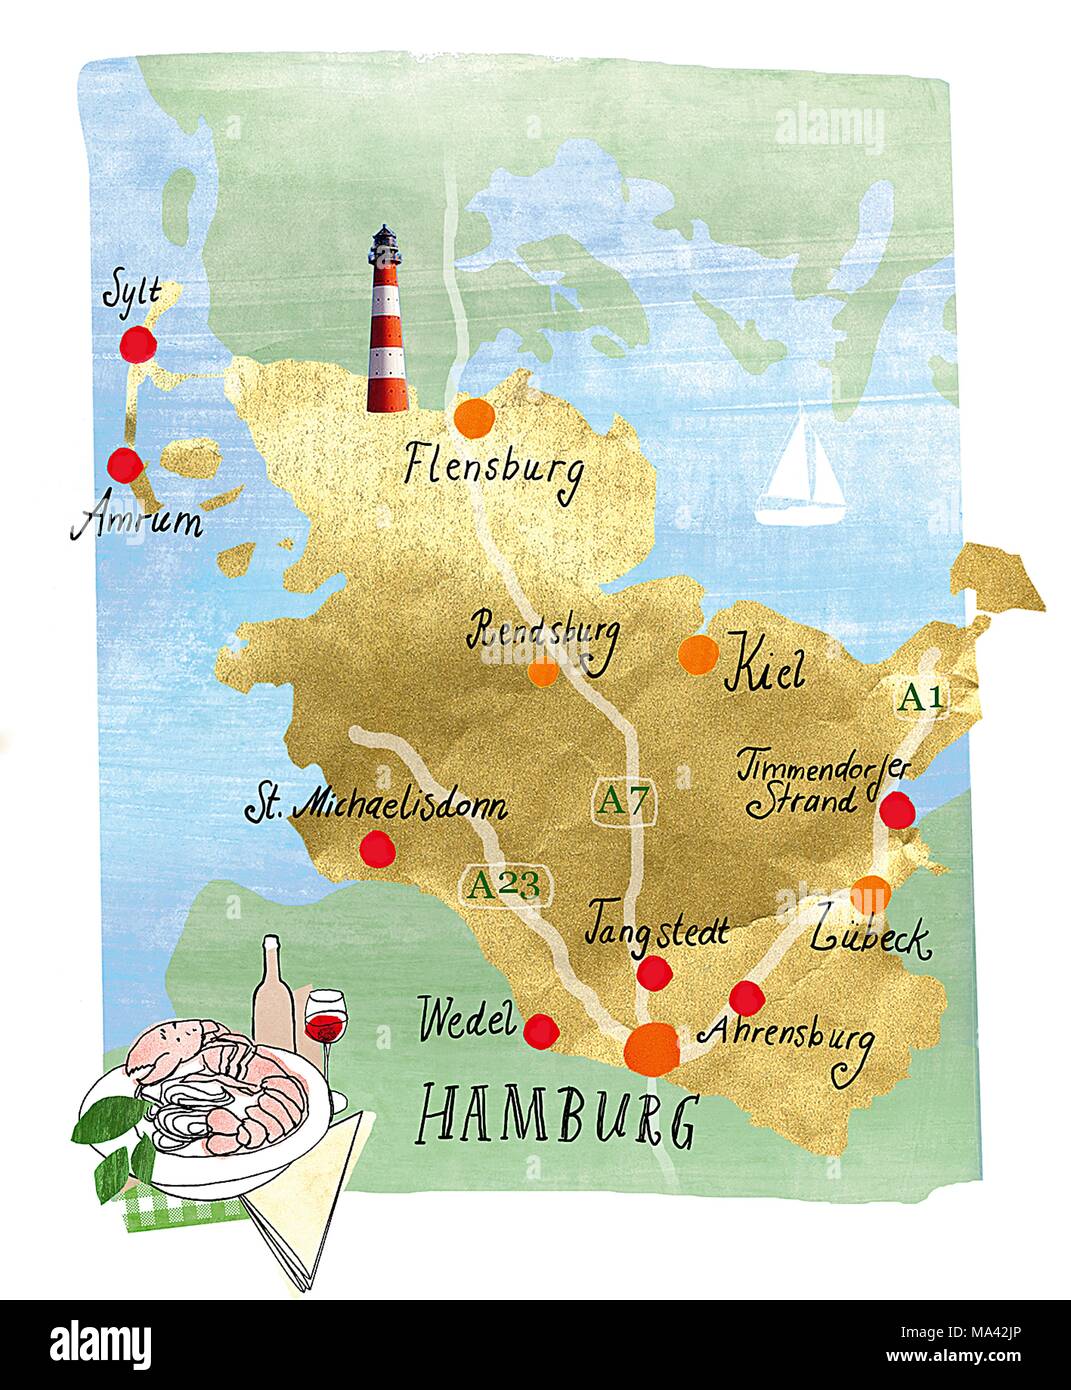 Eine handgezeichnete Karte von Hamburg und der Region im Norden Deutschlands Stockfoto